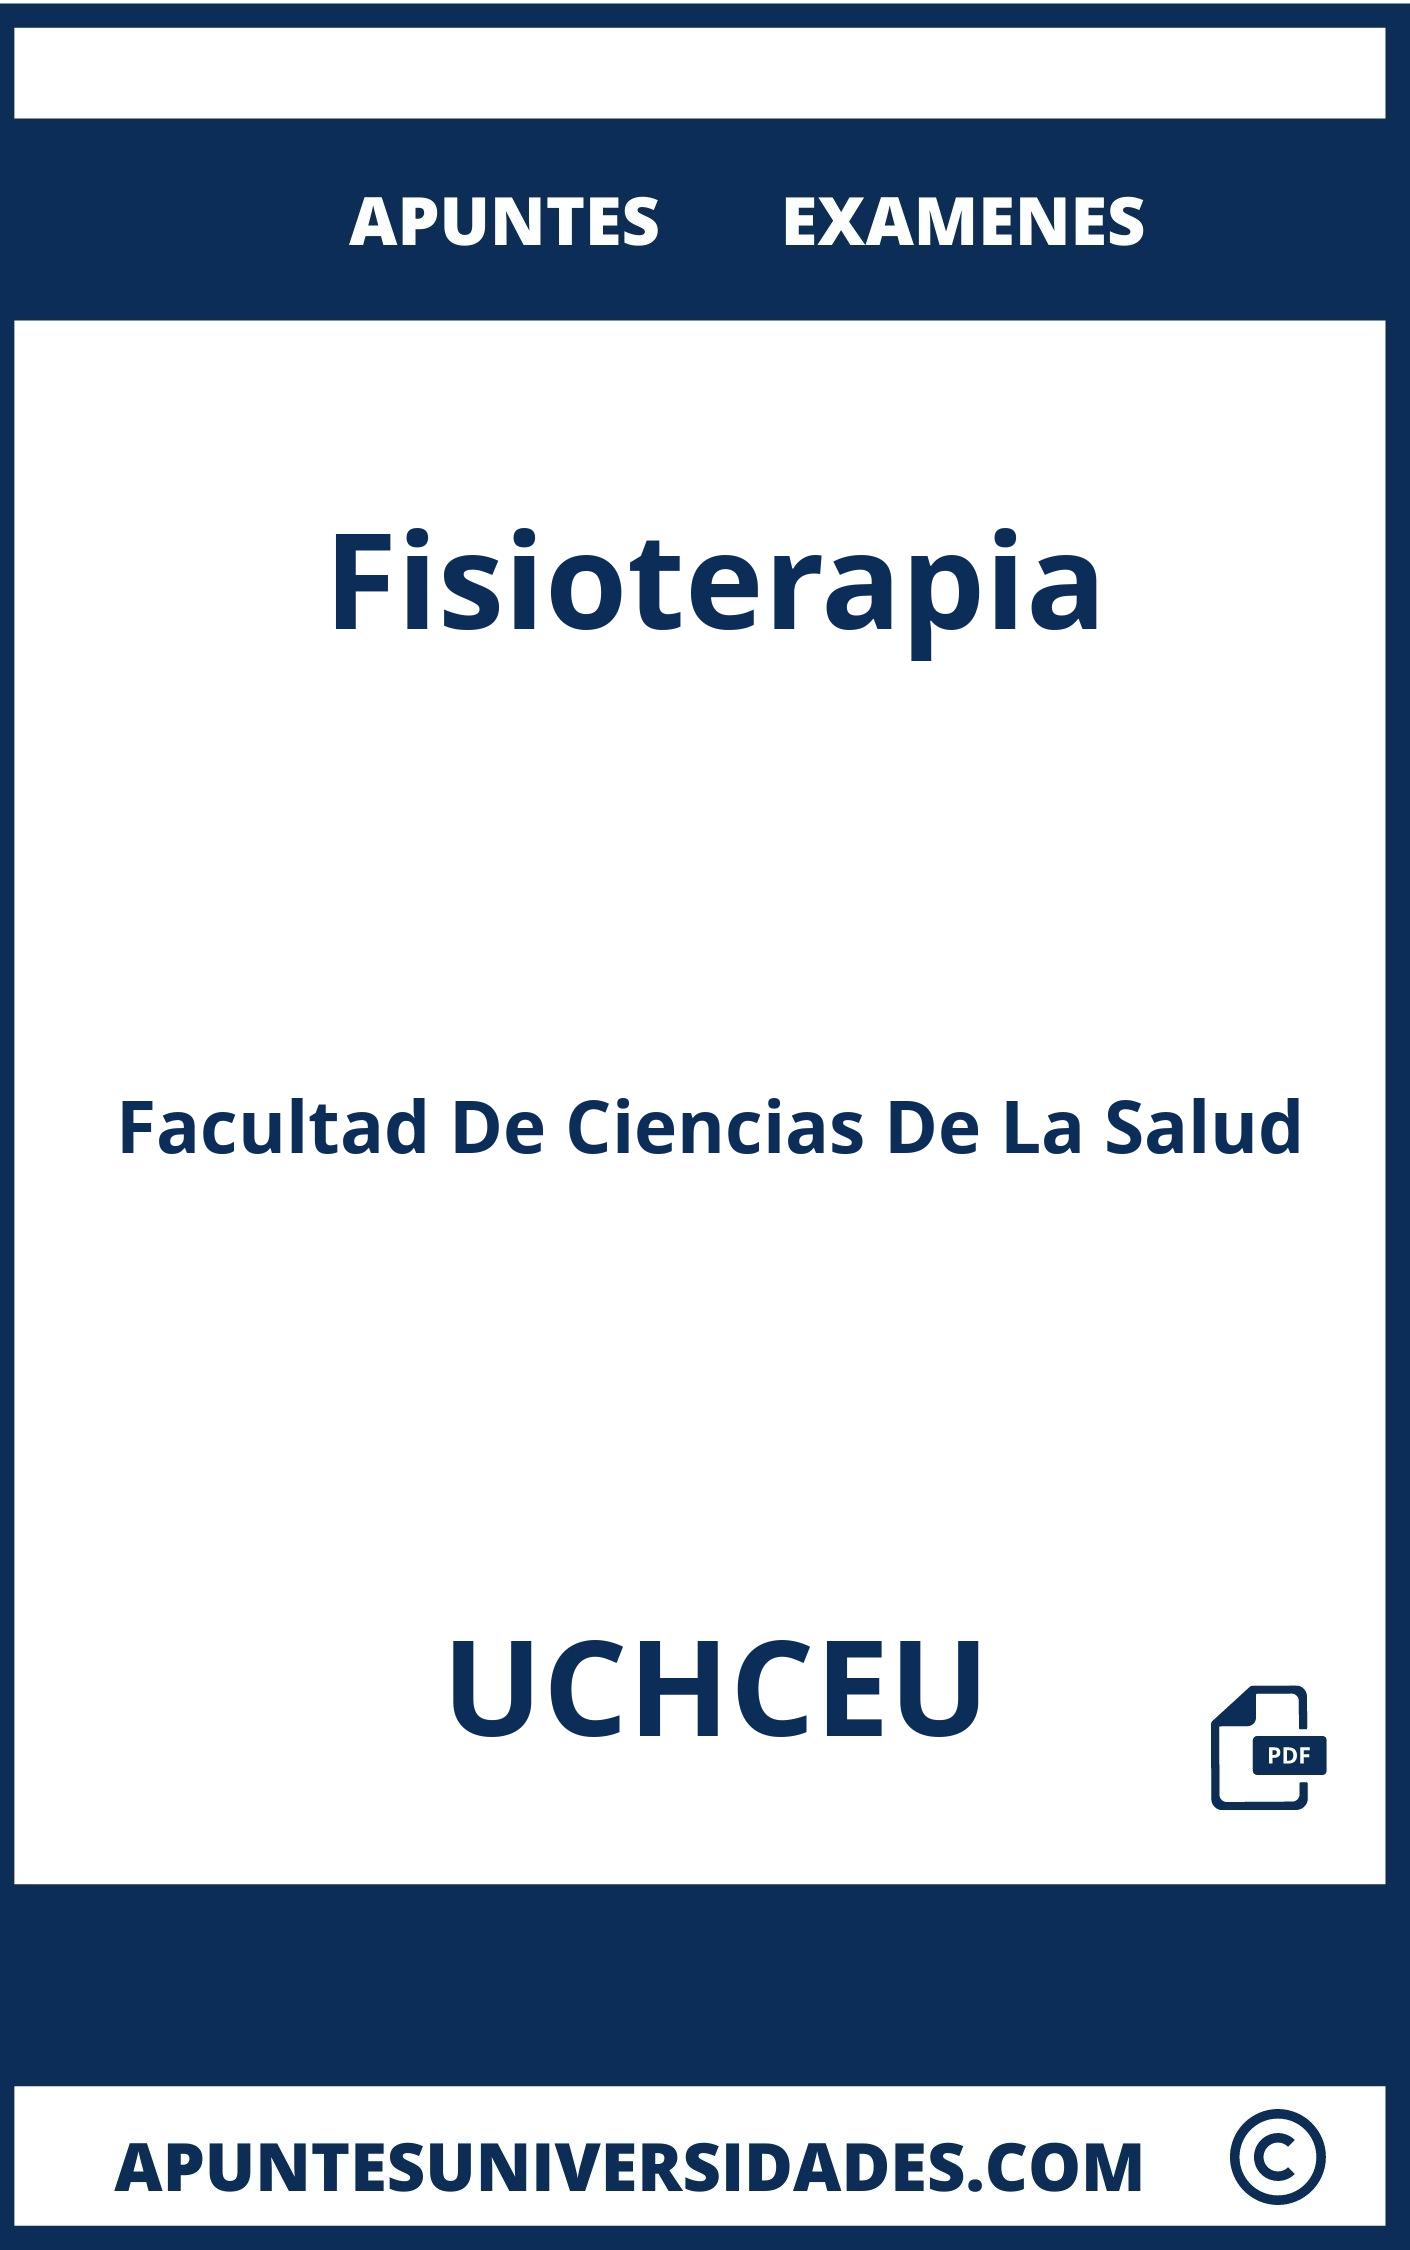 Examenes Fisioterapia UCHCEU y Apuntes